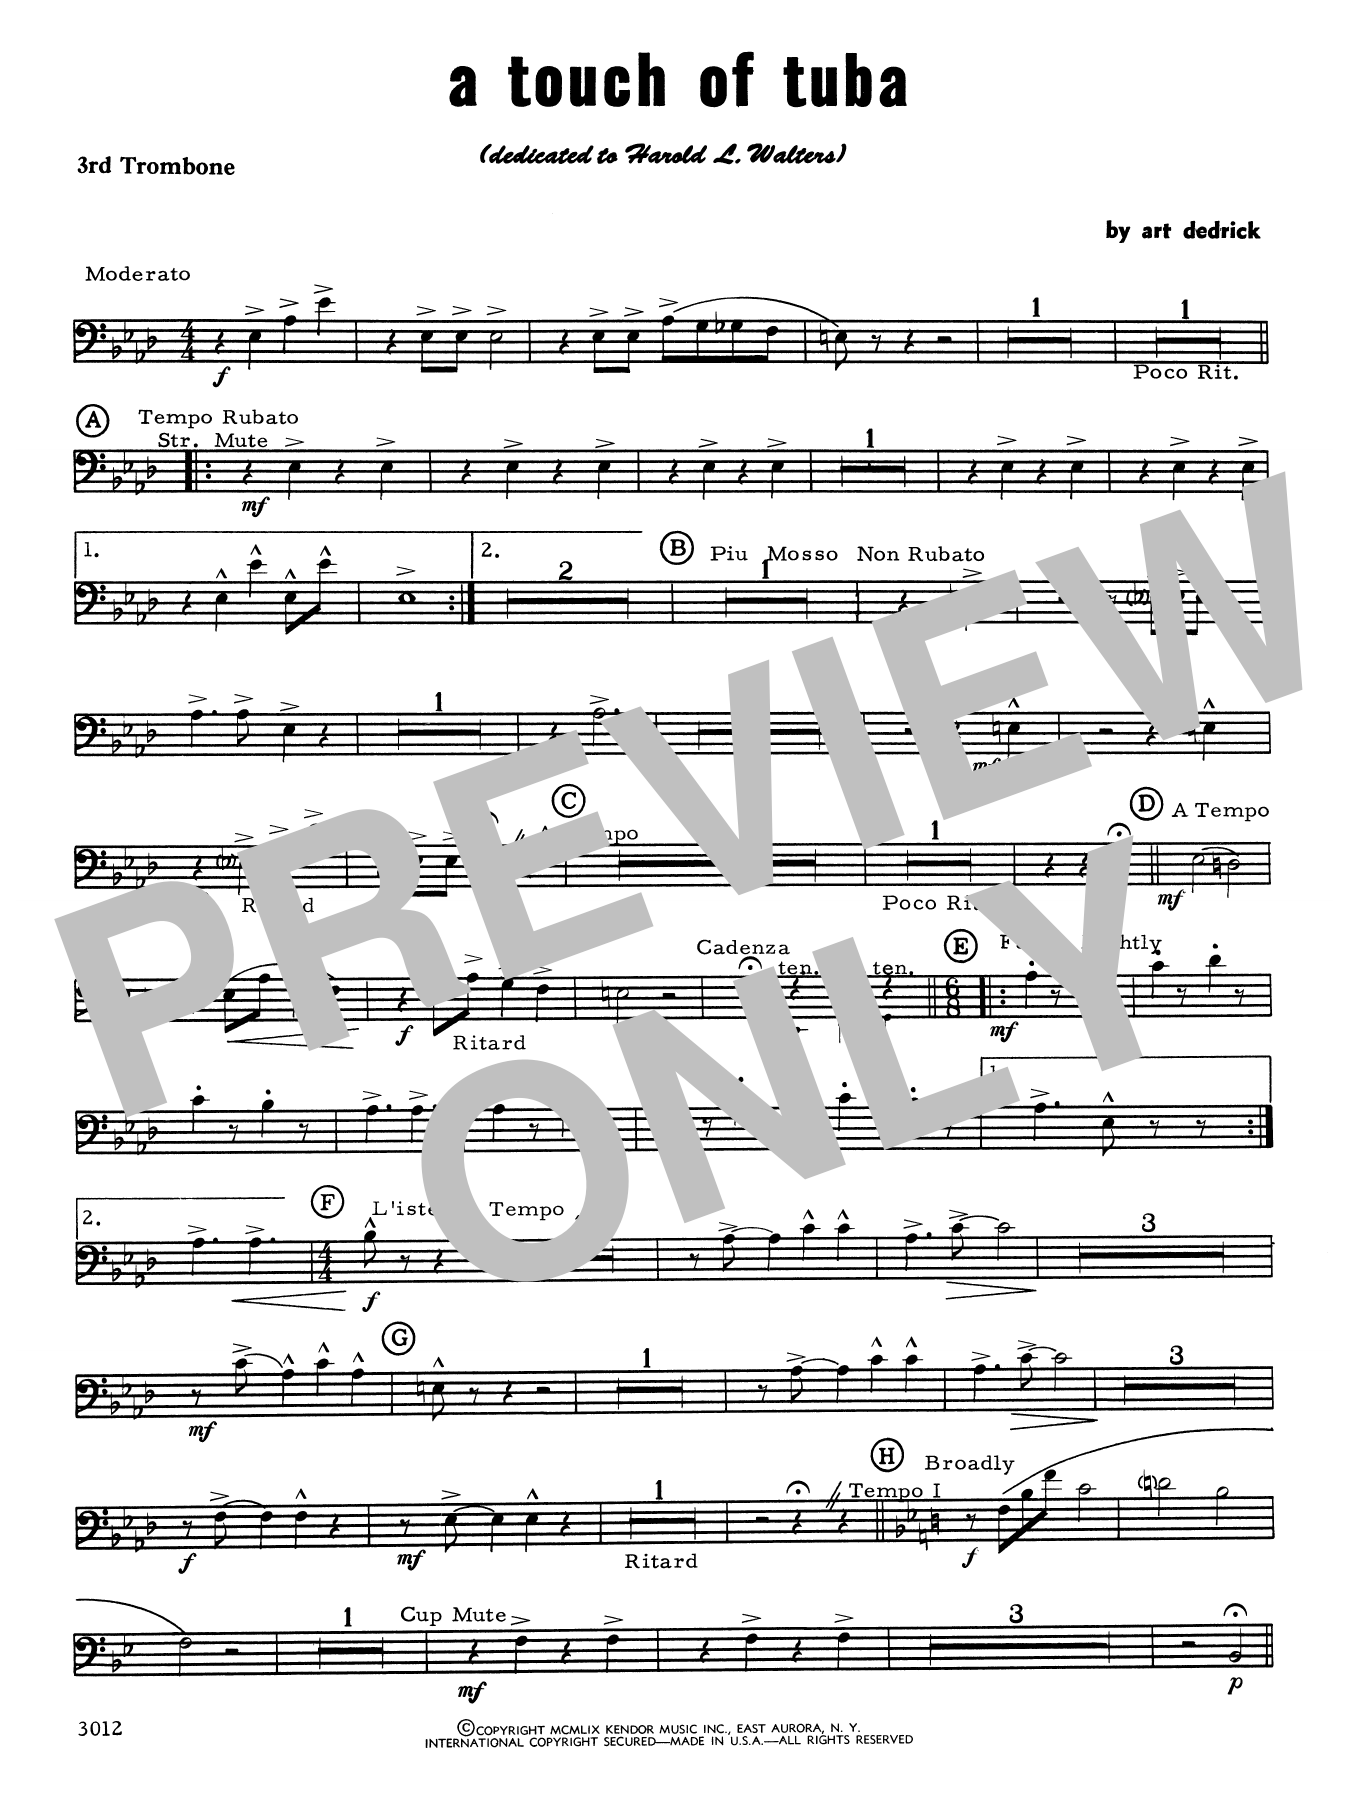 Download Art Dedrick A Touch Of Tuba - 3rd Trombone Sheet Music